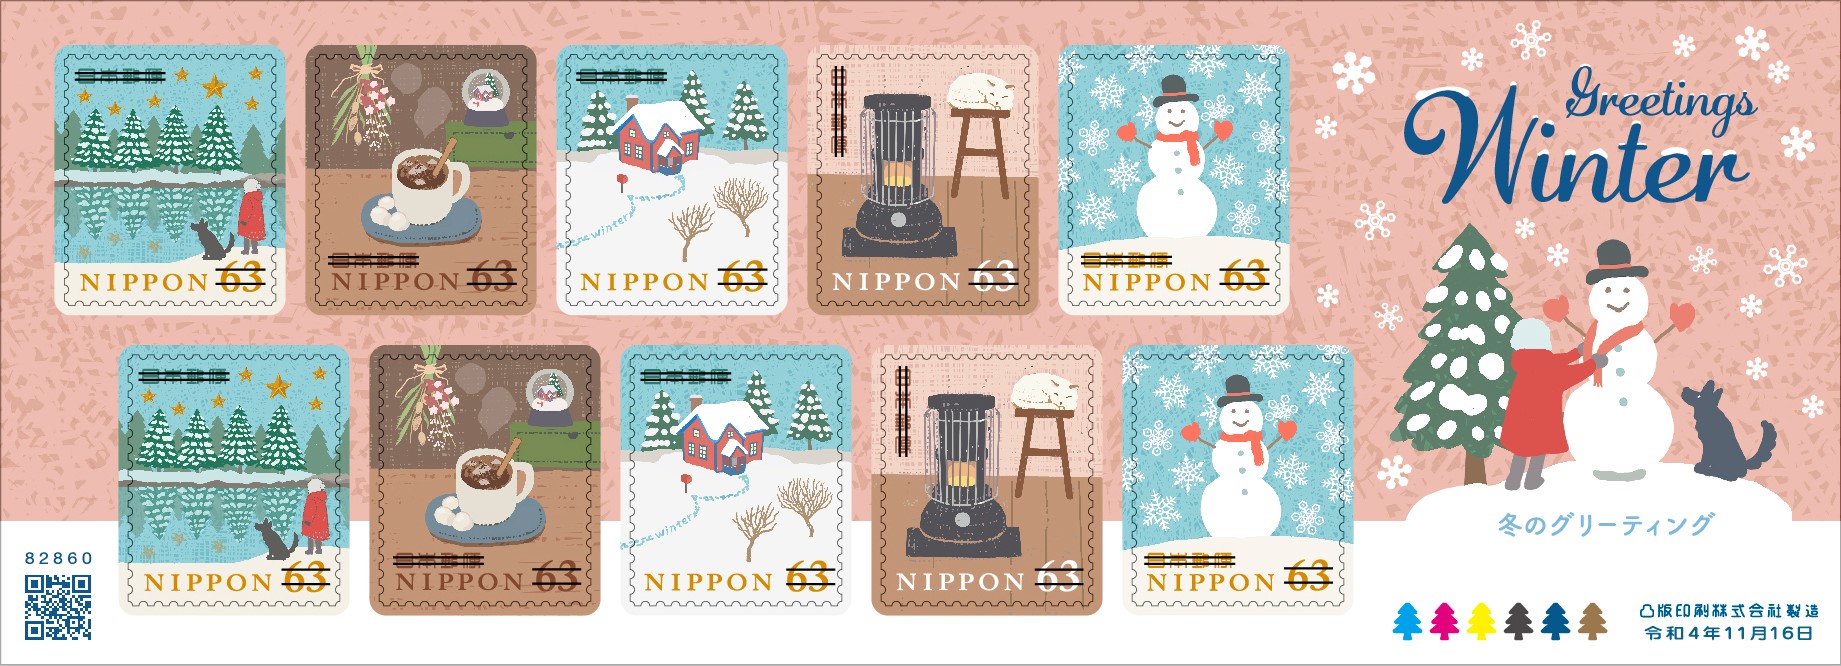 冬のグリーティング | 日本郵便株式会社